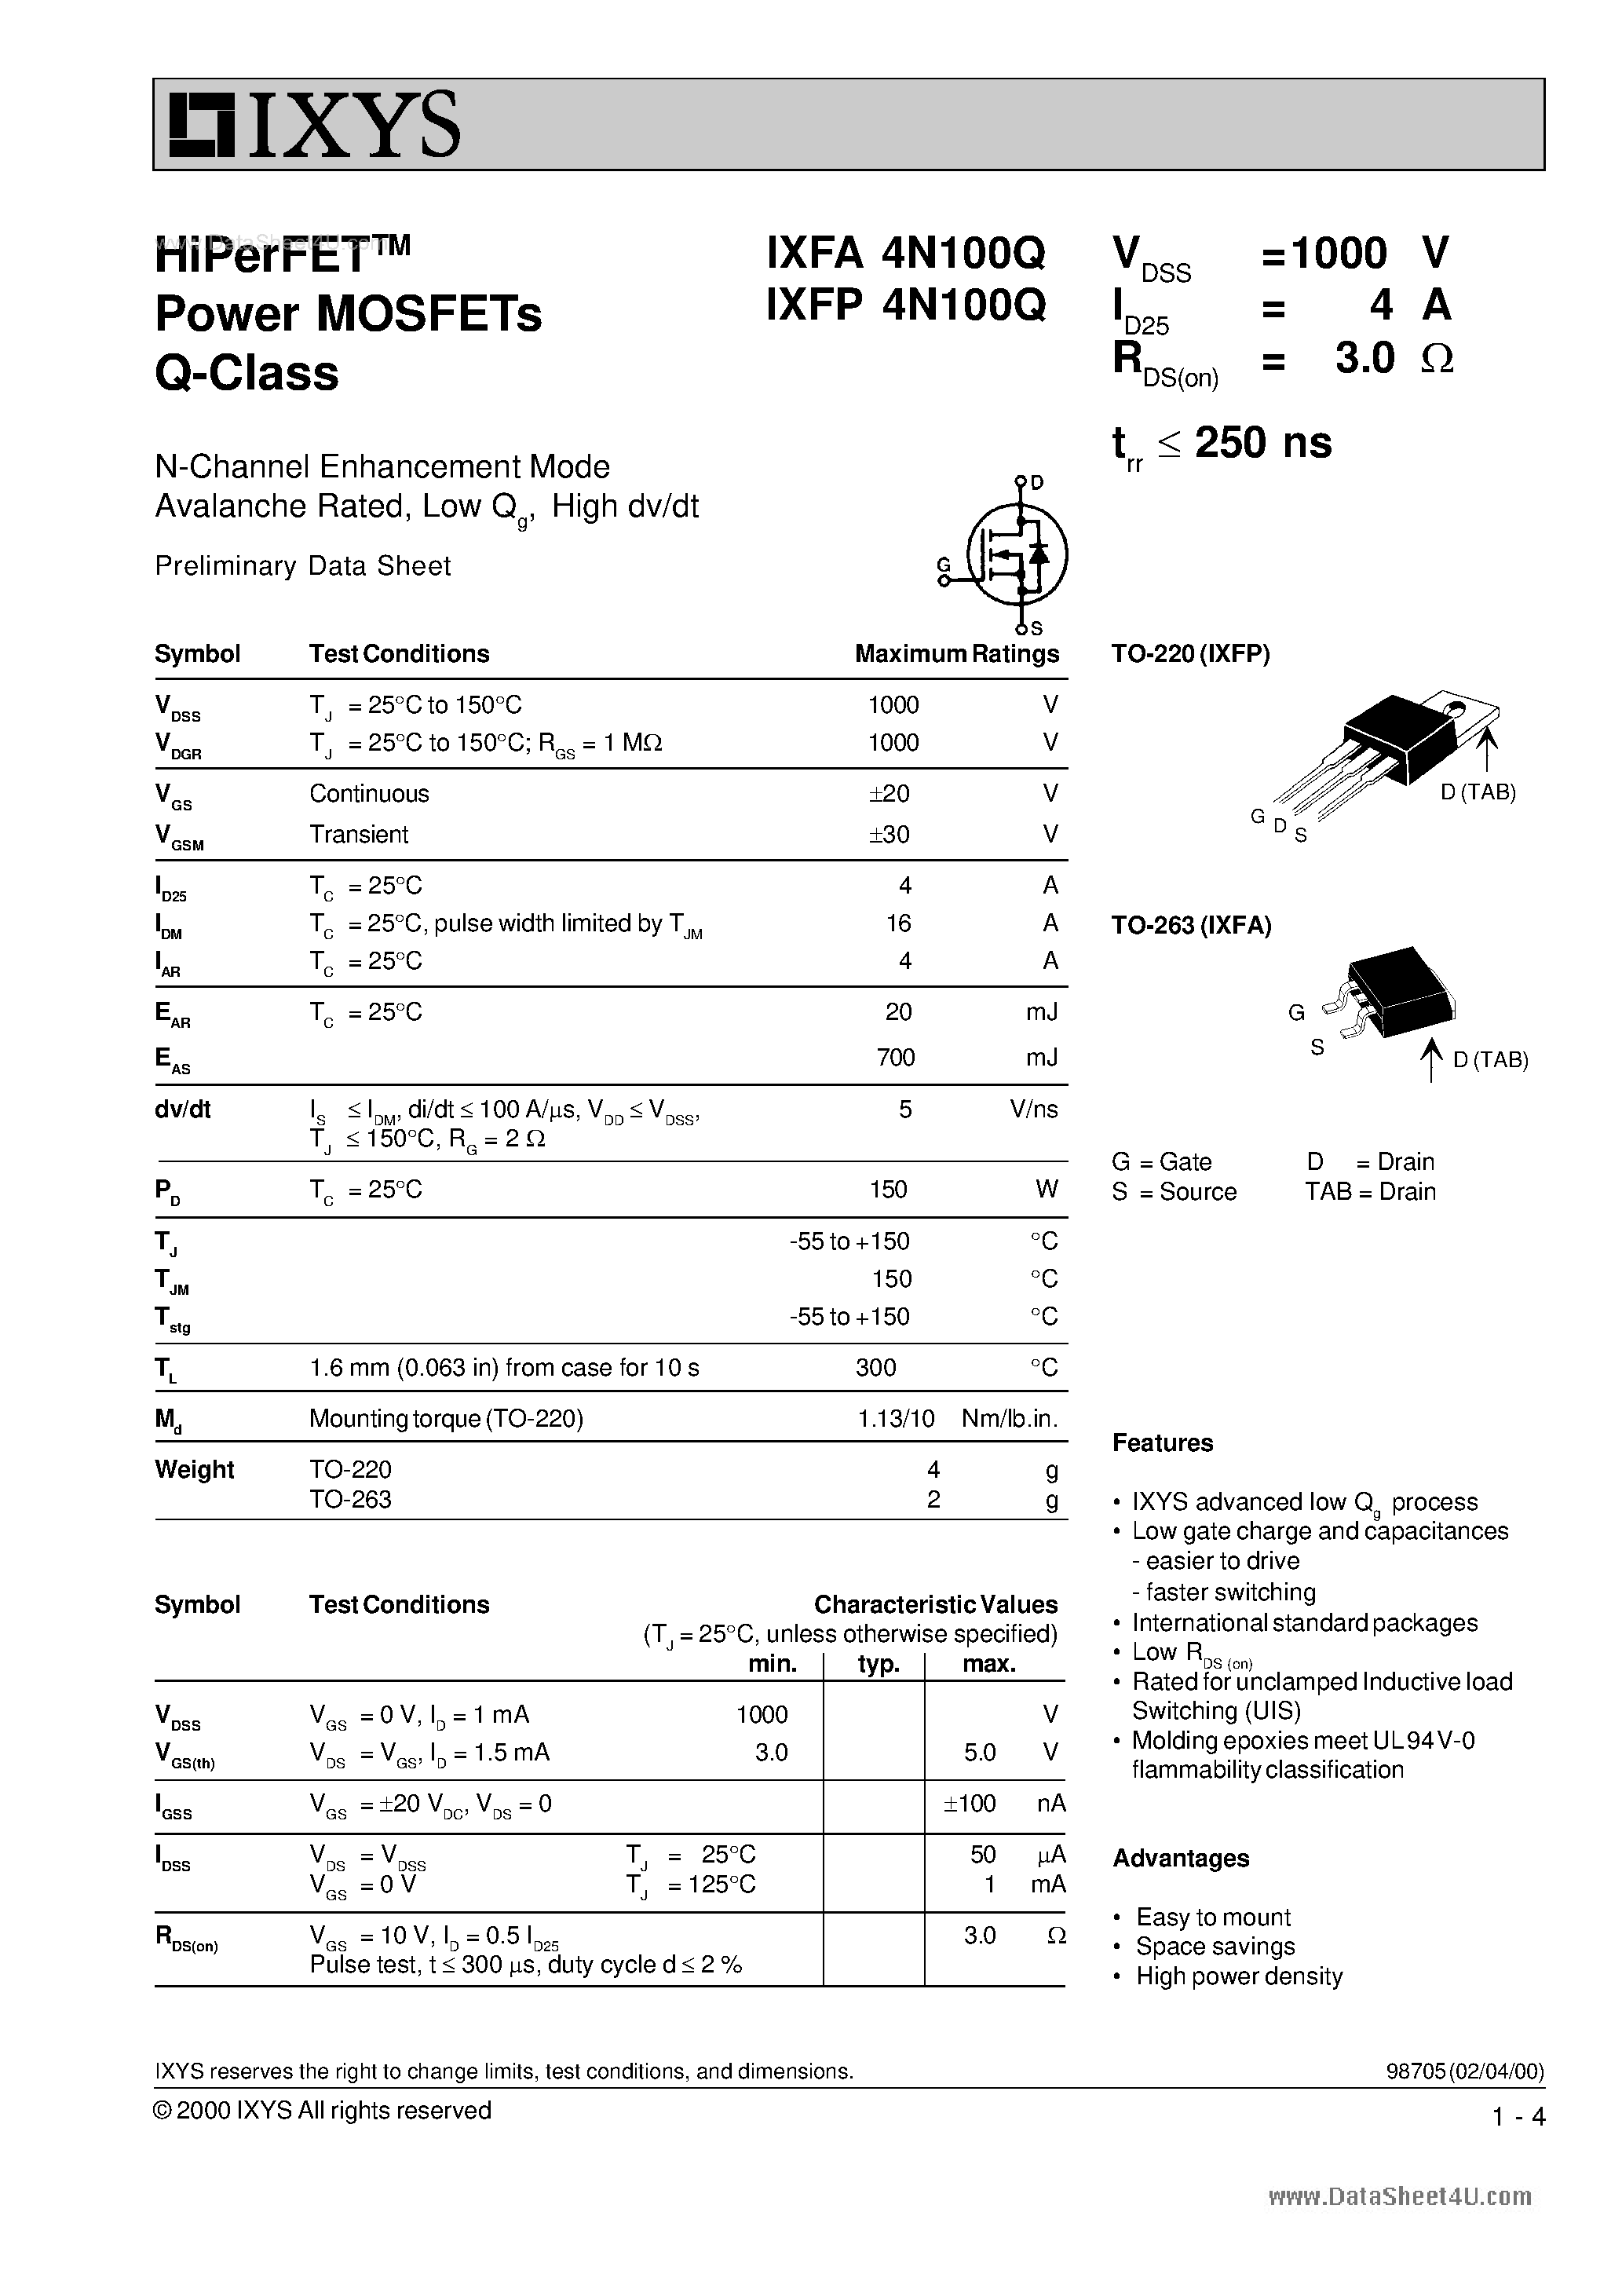 Даташит IXFA4N100Q - HiPerFET Power MOSFETs Q-Class страница 1